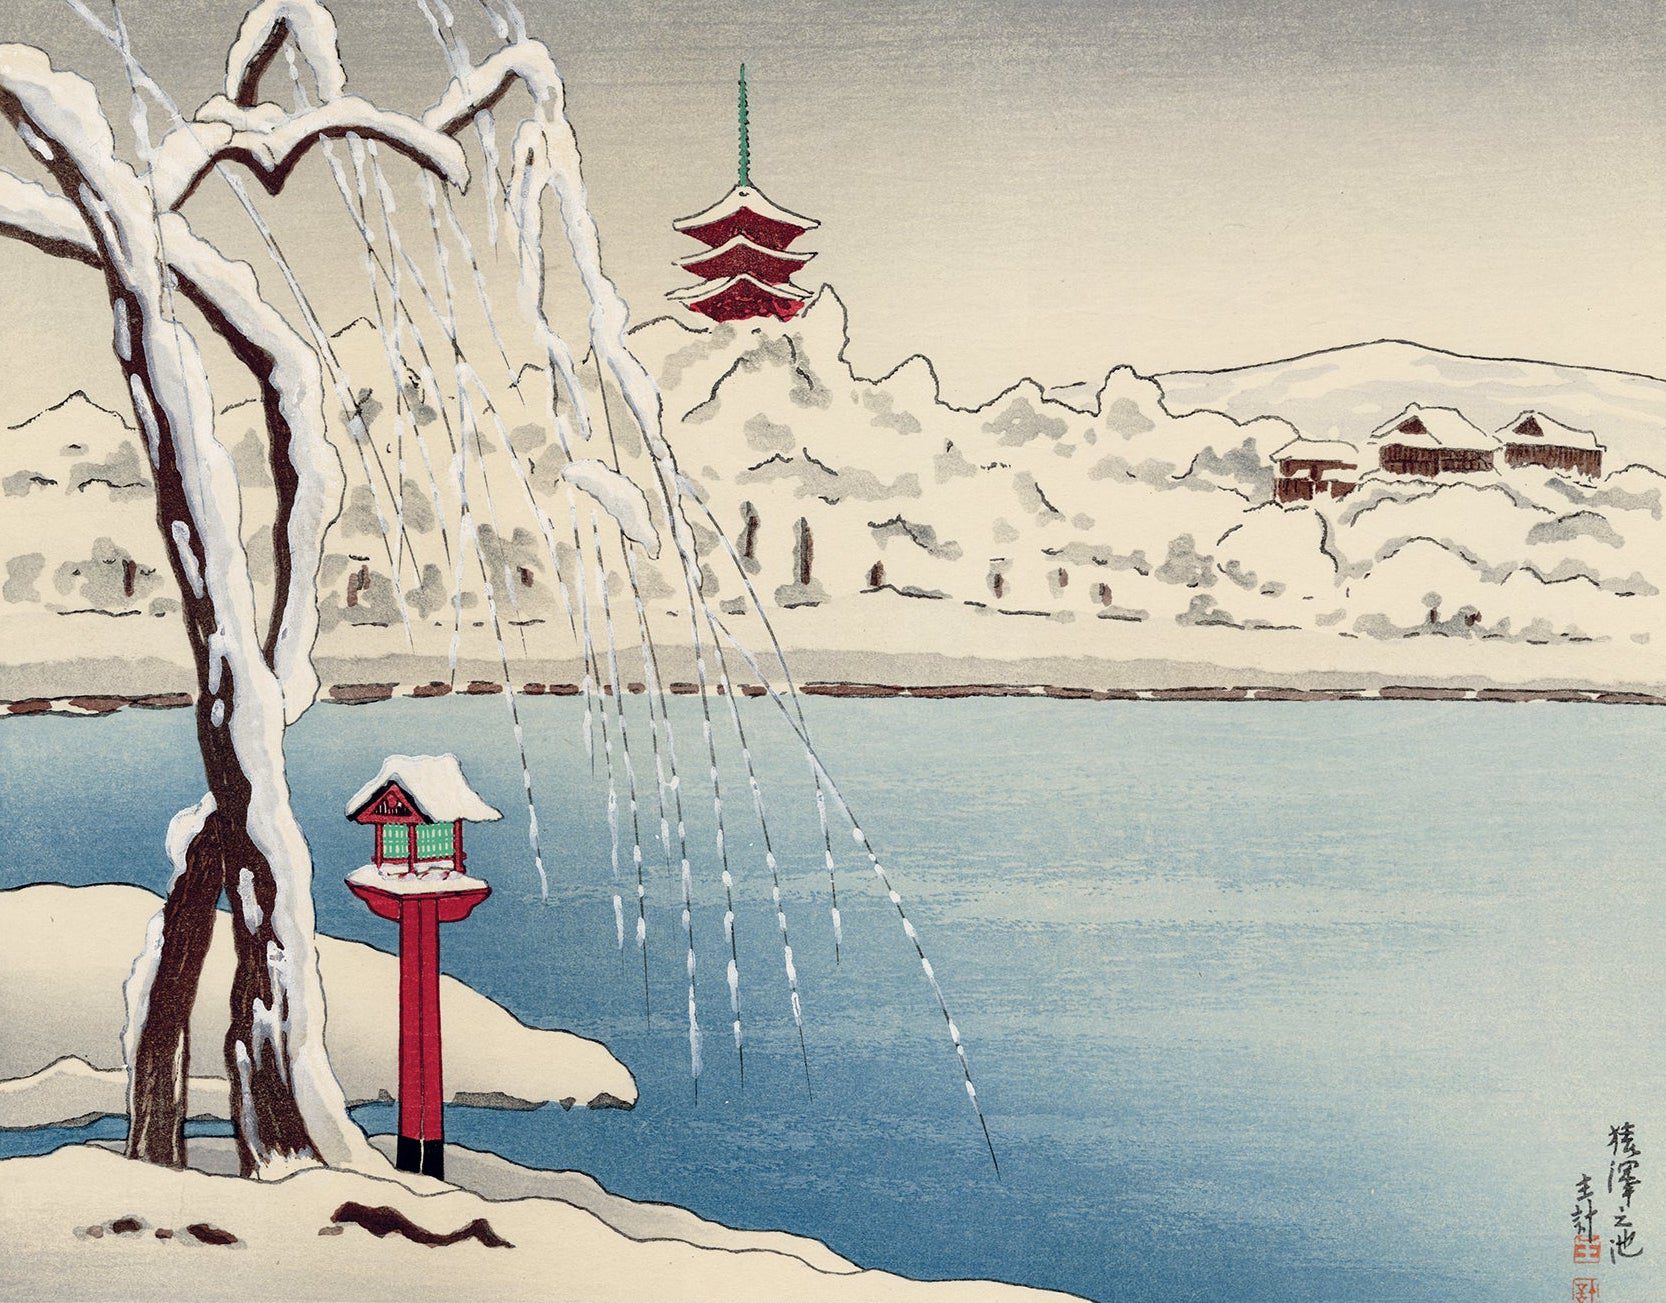 日本美術と山岸一恵 – Modern Tokyo Times